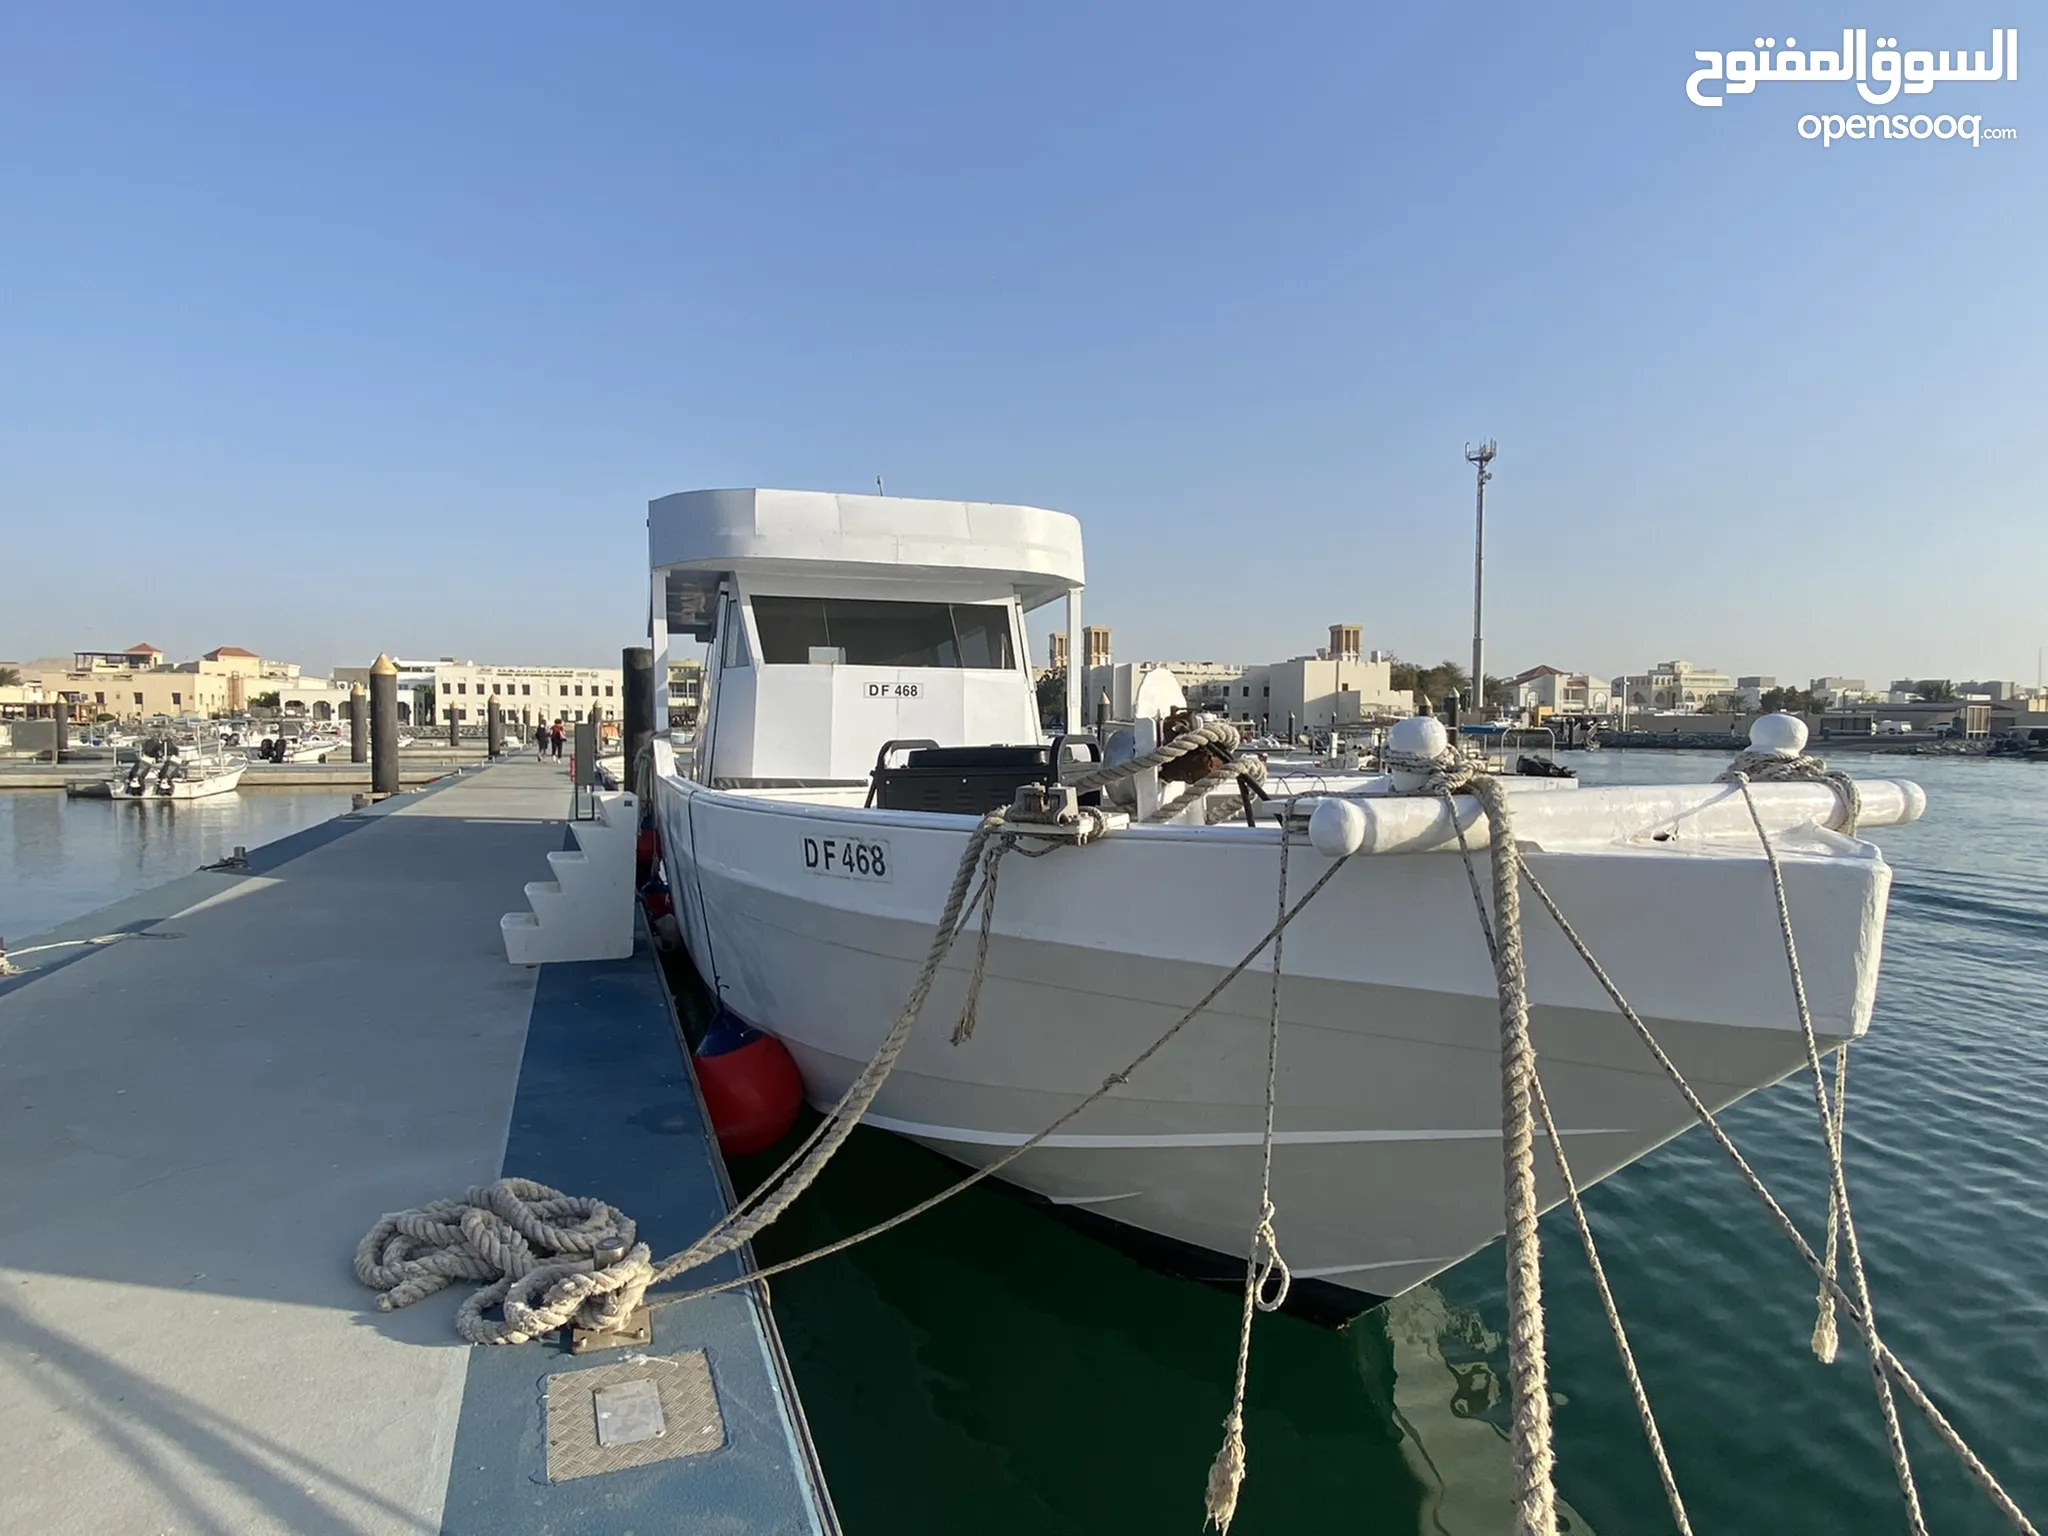 قوارب مع محرك للبيع : طراد للبيع : قارب نزهة للبيع : جديد ومستعمل : أفضل  الأسعار في دبي | السوق المفتوح